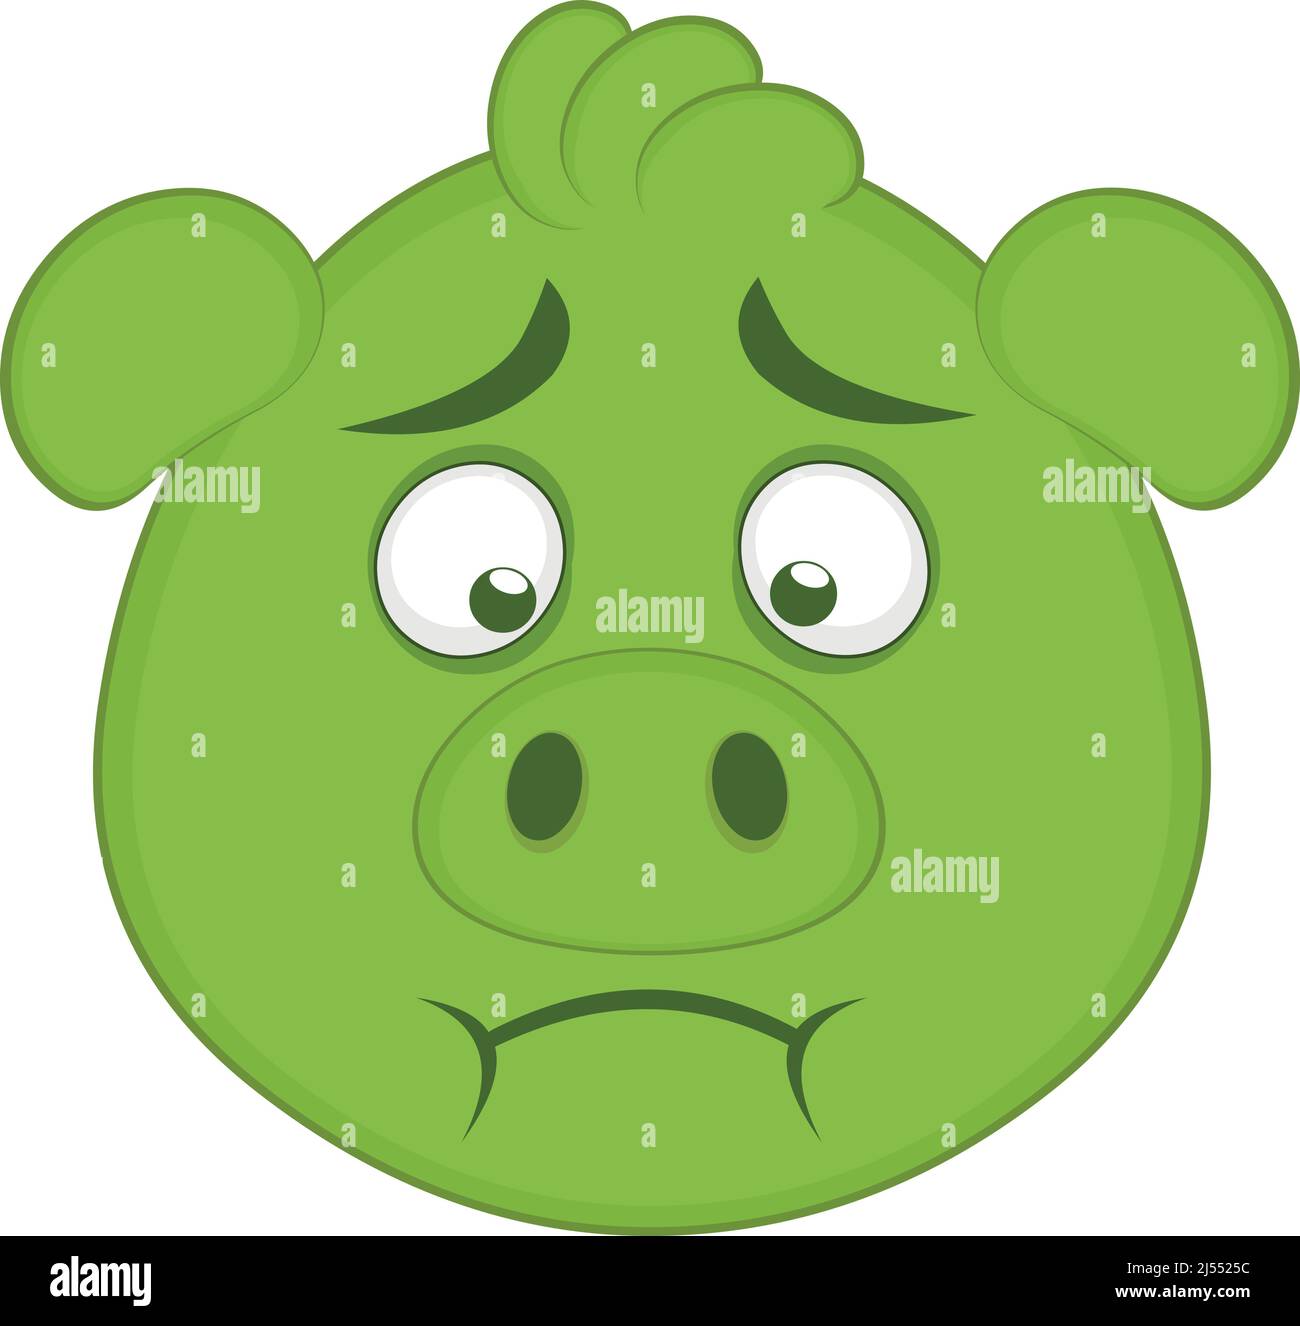 Vektor-Illustration des Gesichts eines Cartoon-Schweins mit einer grünen Farbe von Übelkeit Stock Vektor